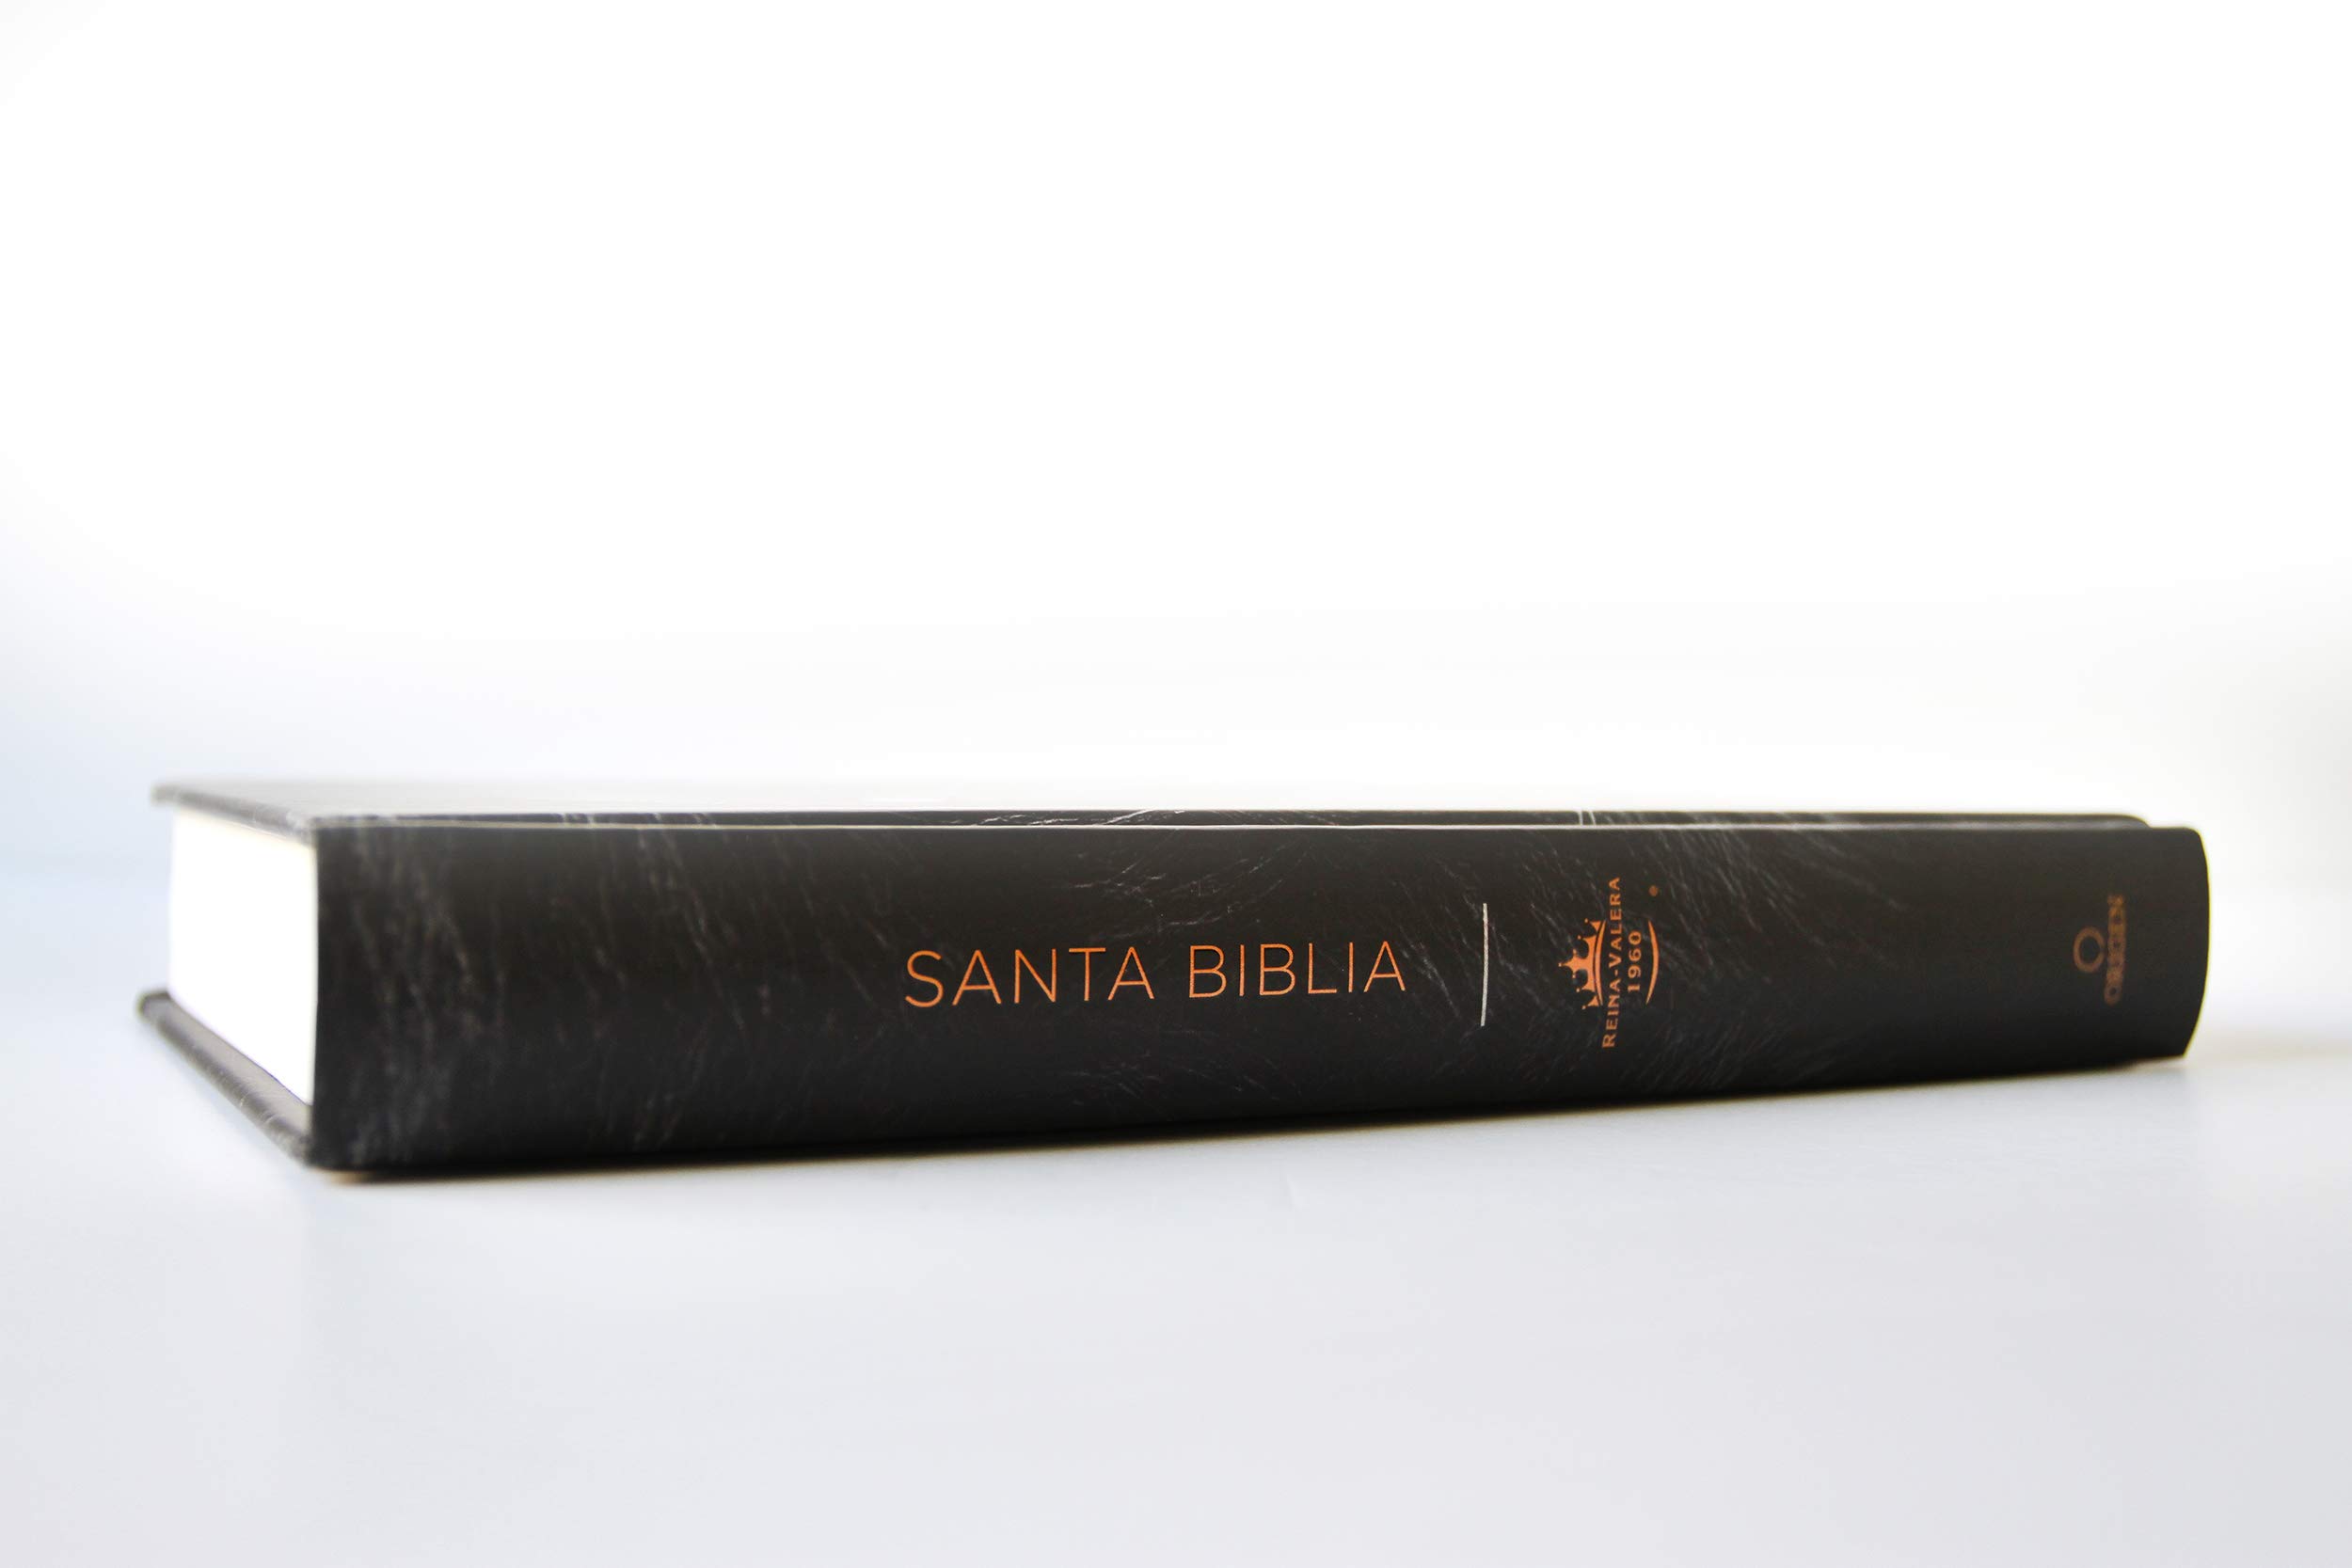 Biblia Reina Valera 1960 letra grande. Tapa dura, León de Judá, tamaño manual/ S panish Bible RVR 1960. Handy Size, Large Print, Hardcover, Lion of Judah